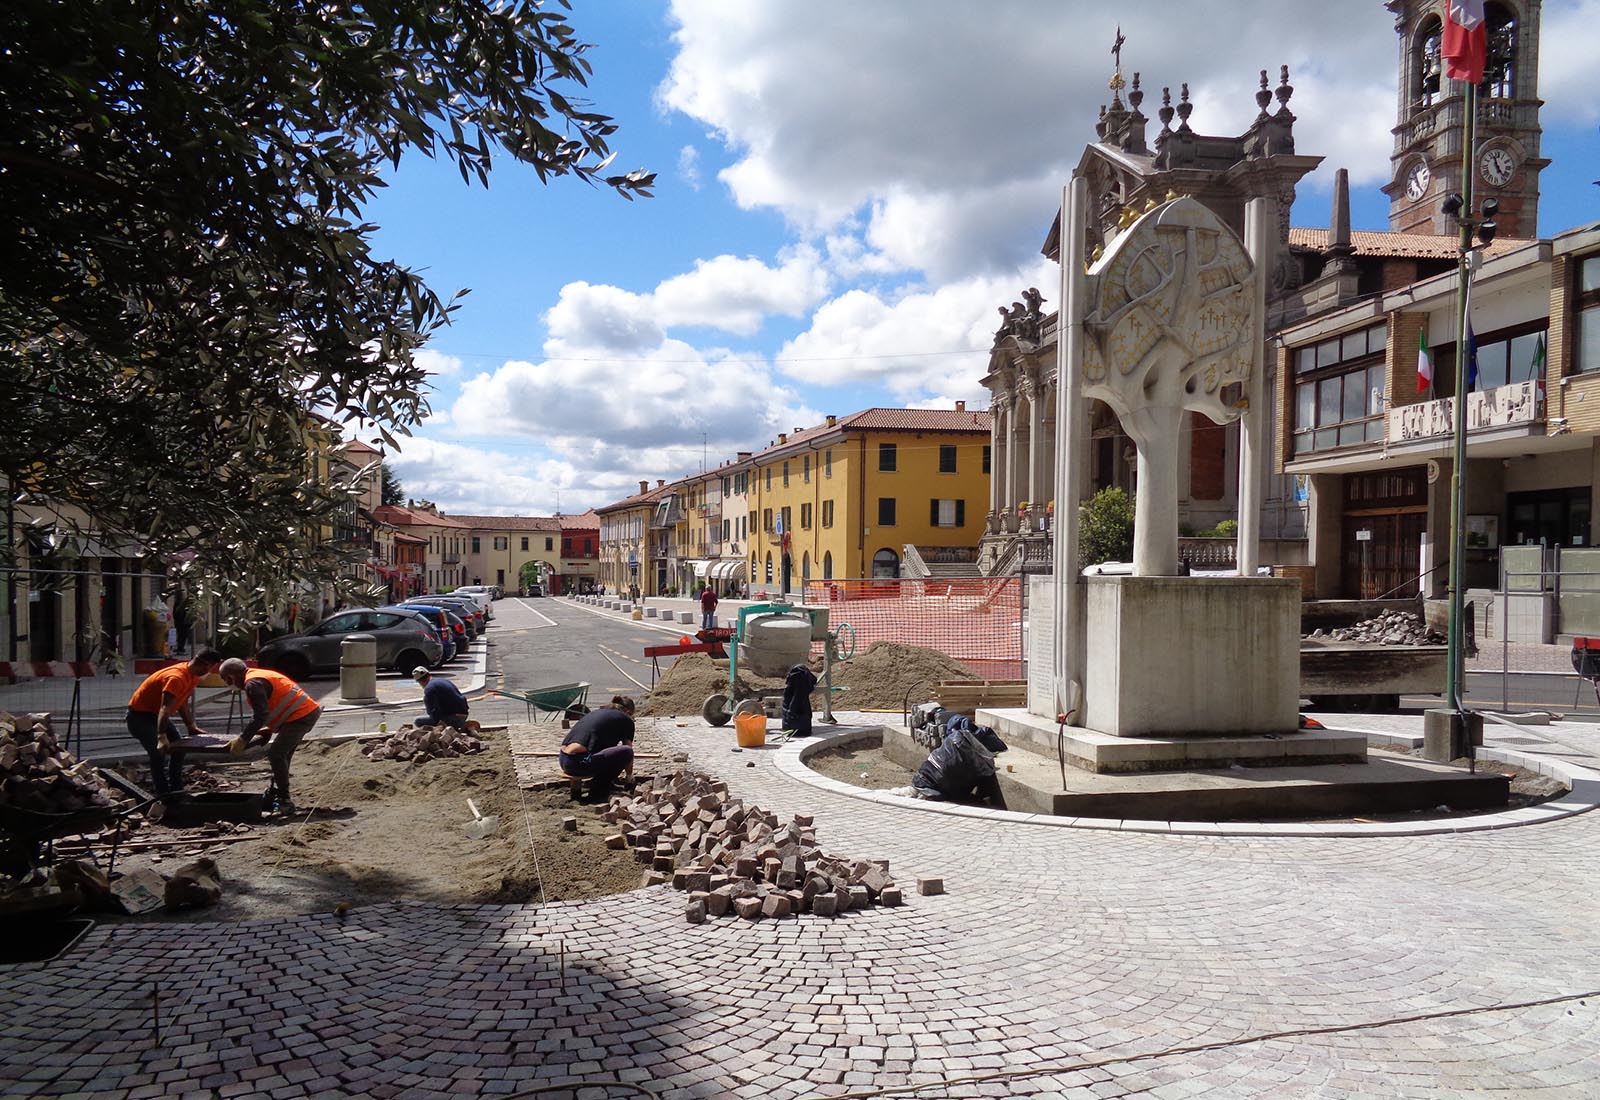 Piazza Libertà in Appiano Gentile - The construction site